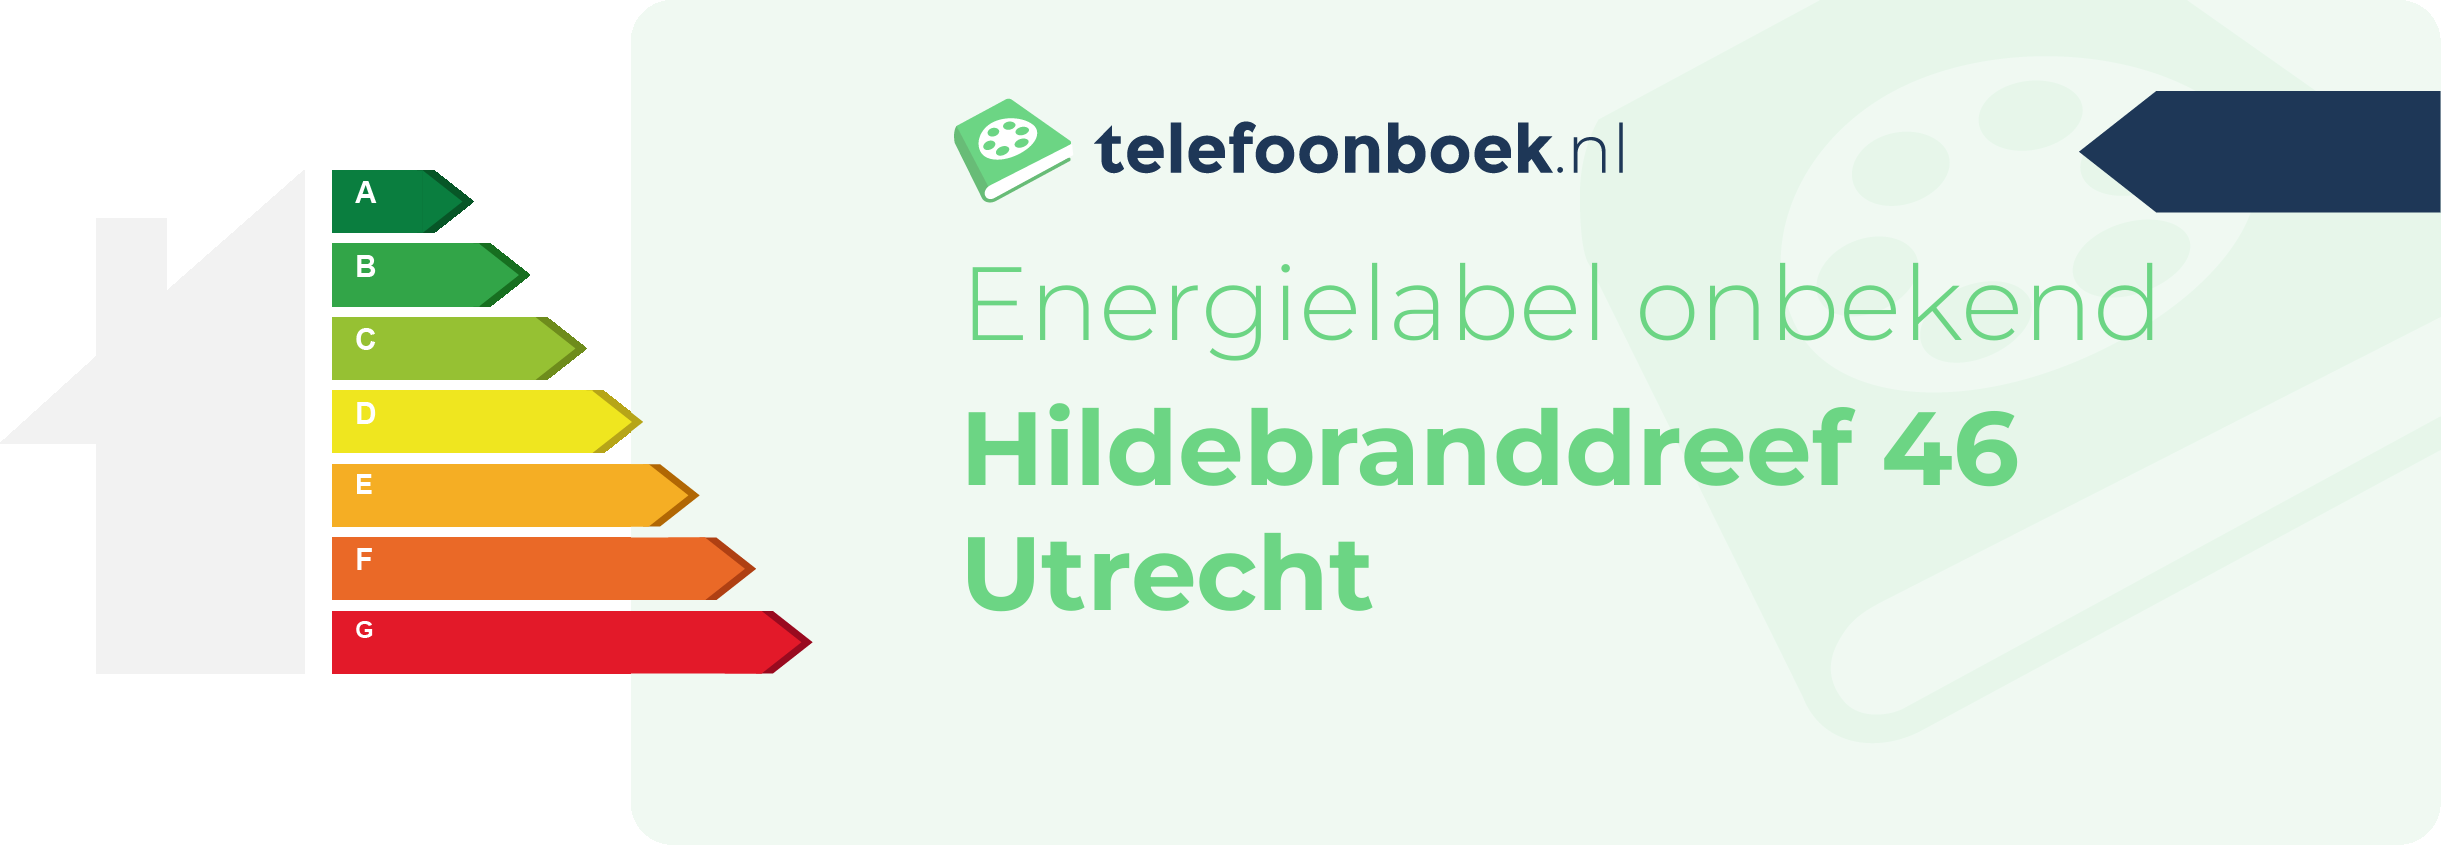 Energielabel Hildebranddreef 46 Utrecht